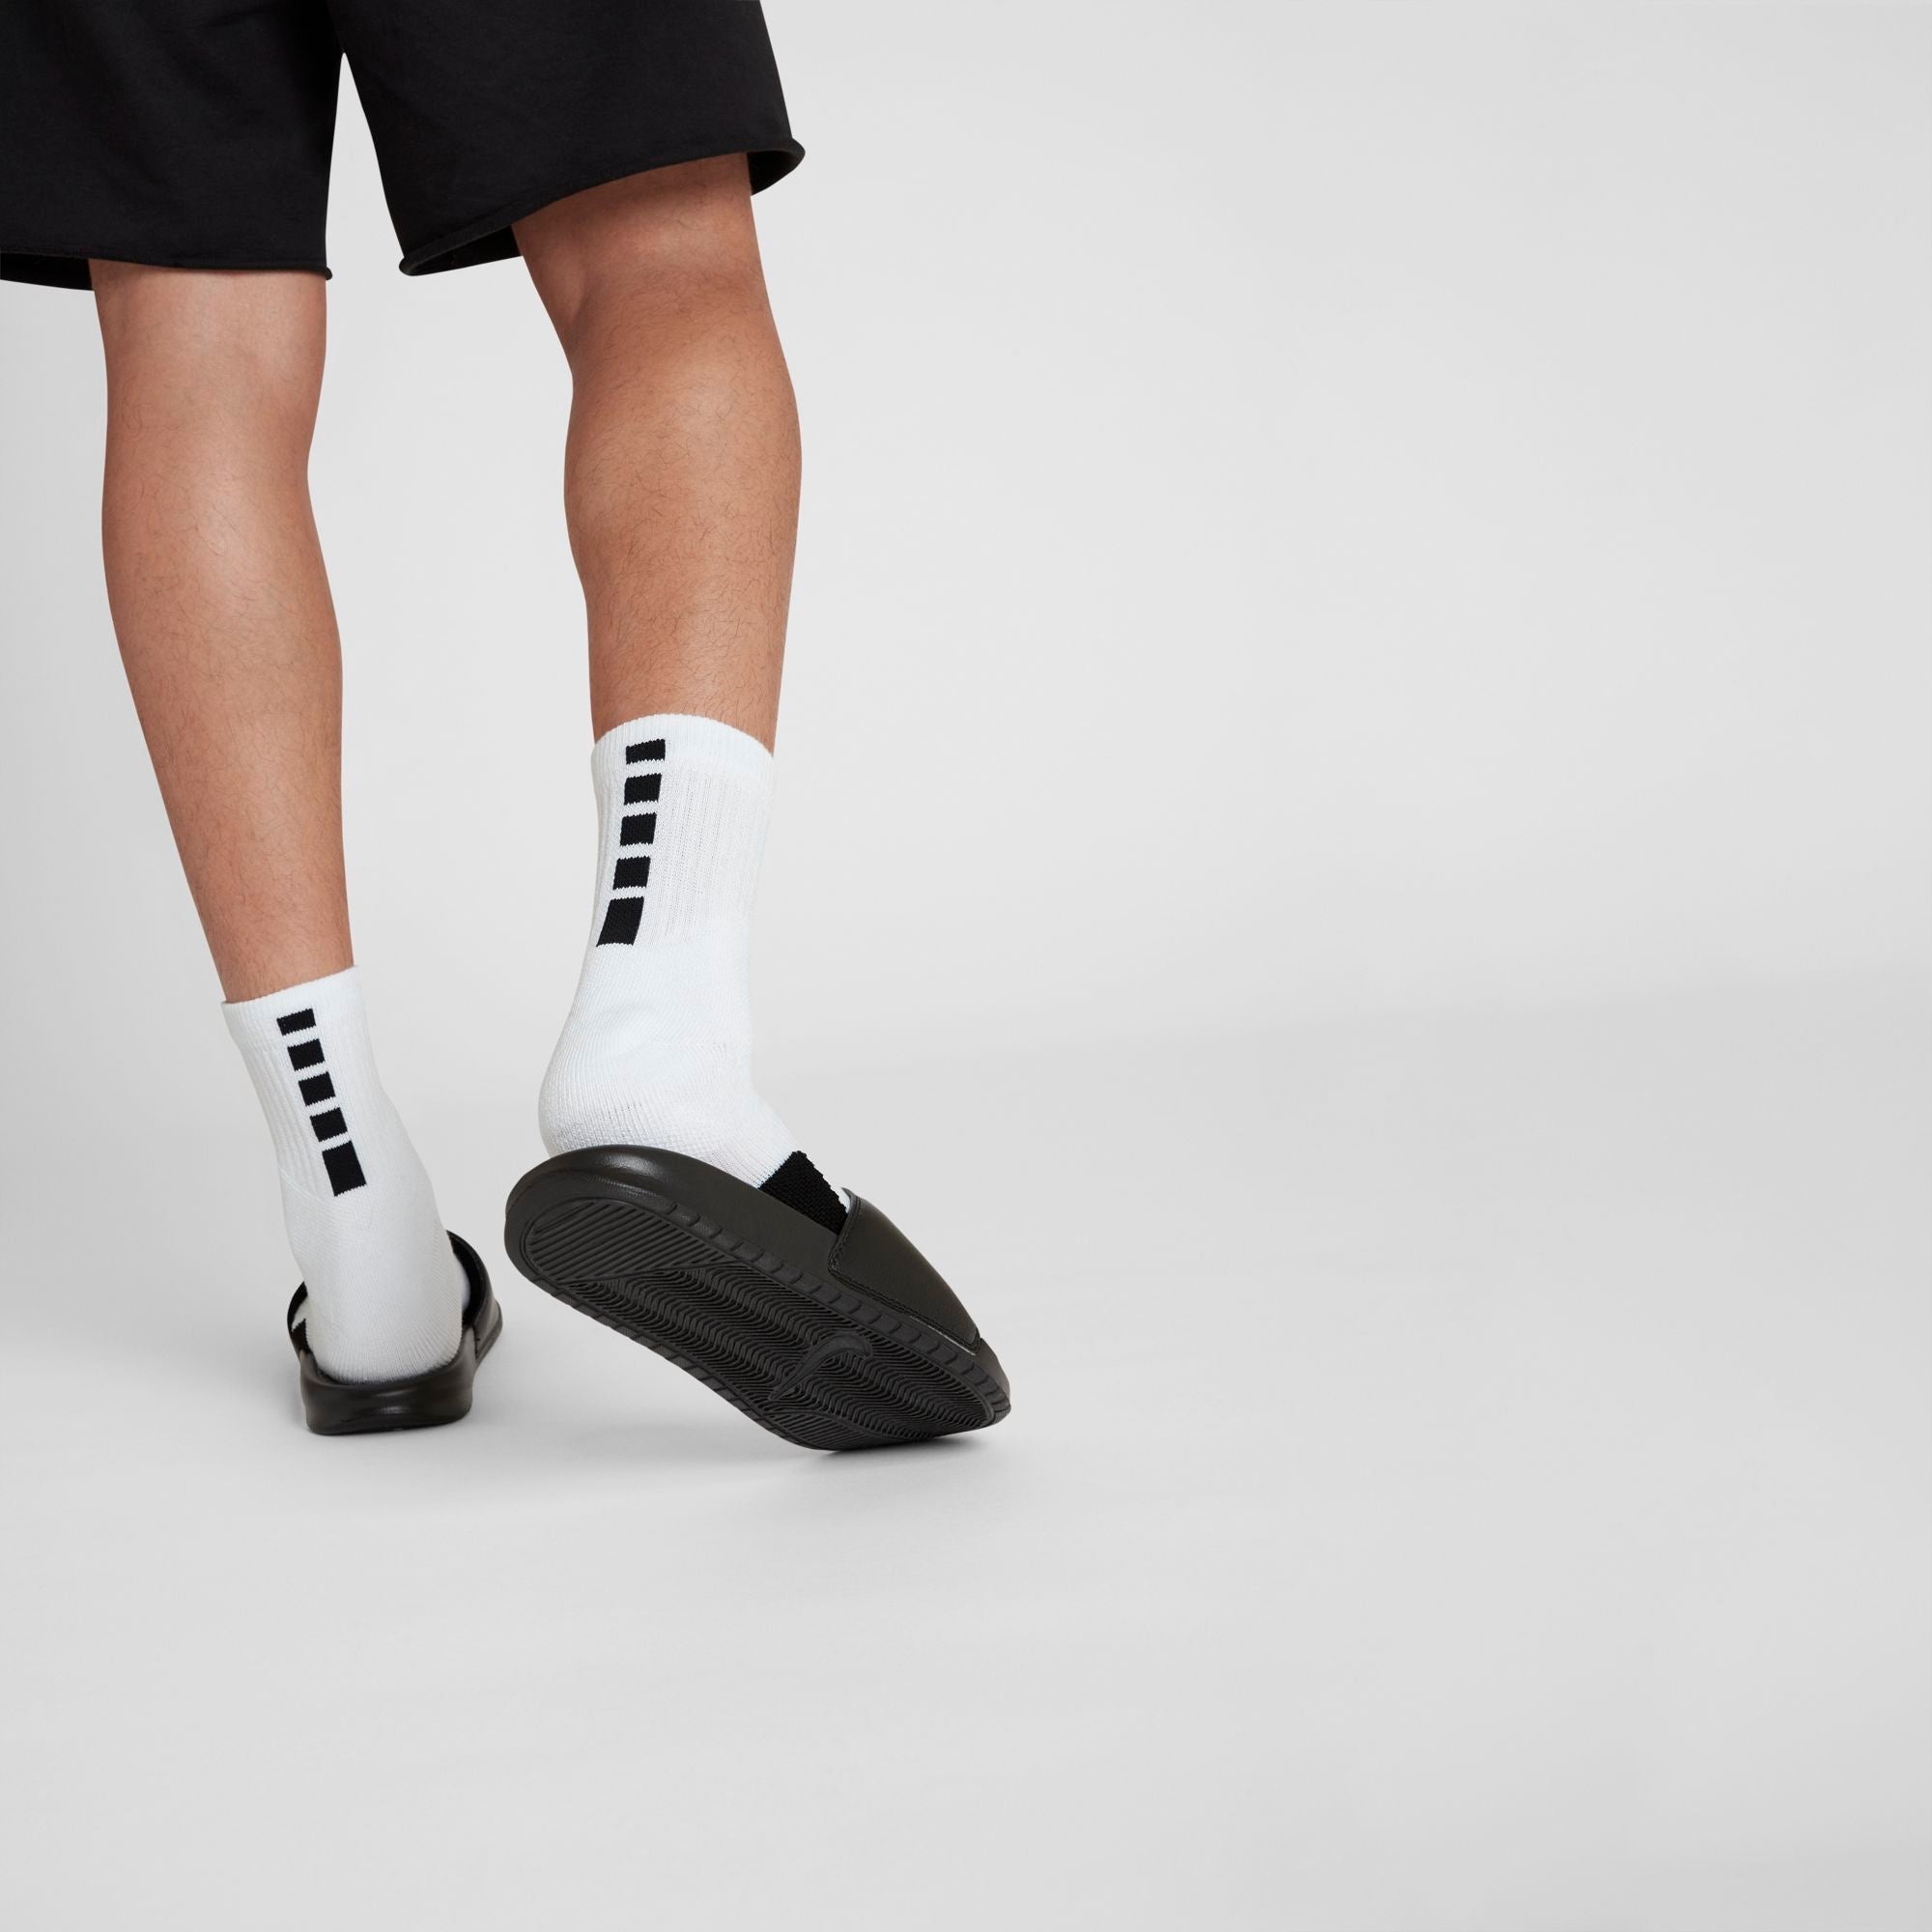 Nike Elite Mid Basketball Socks